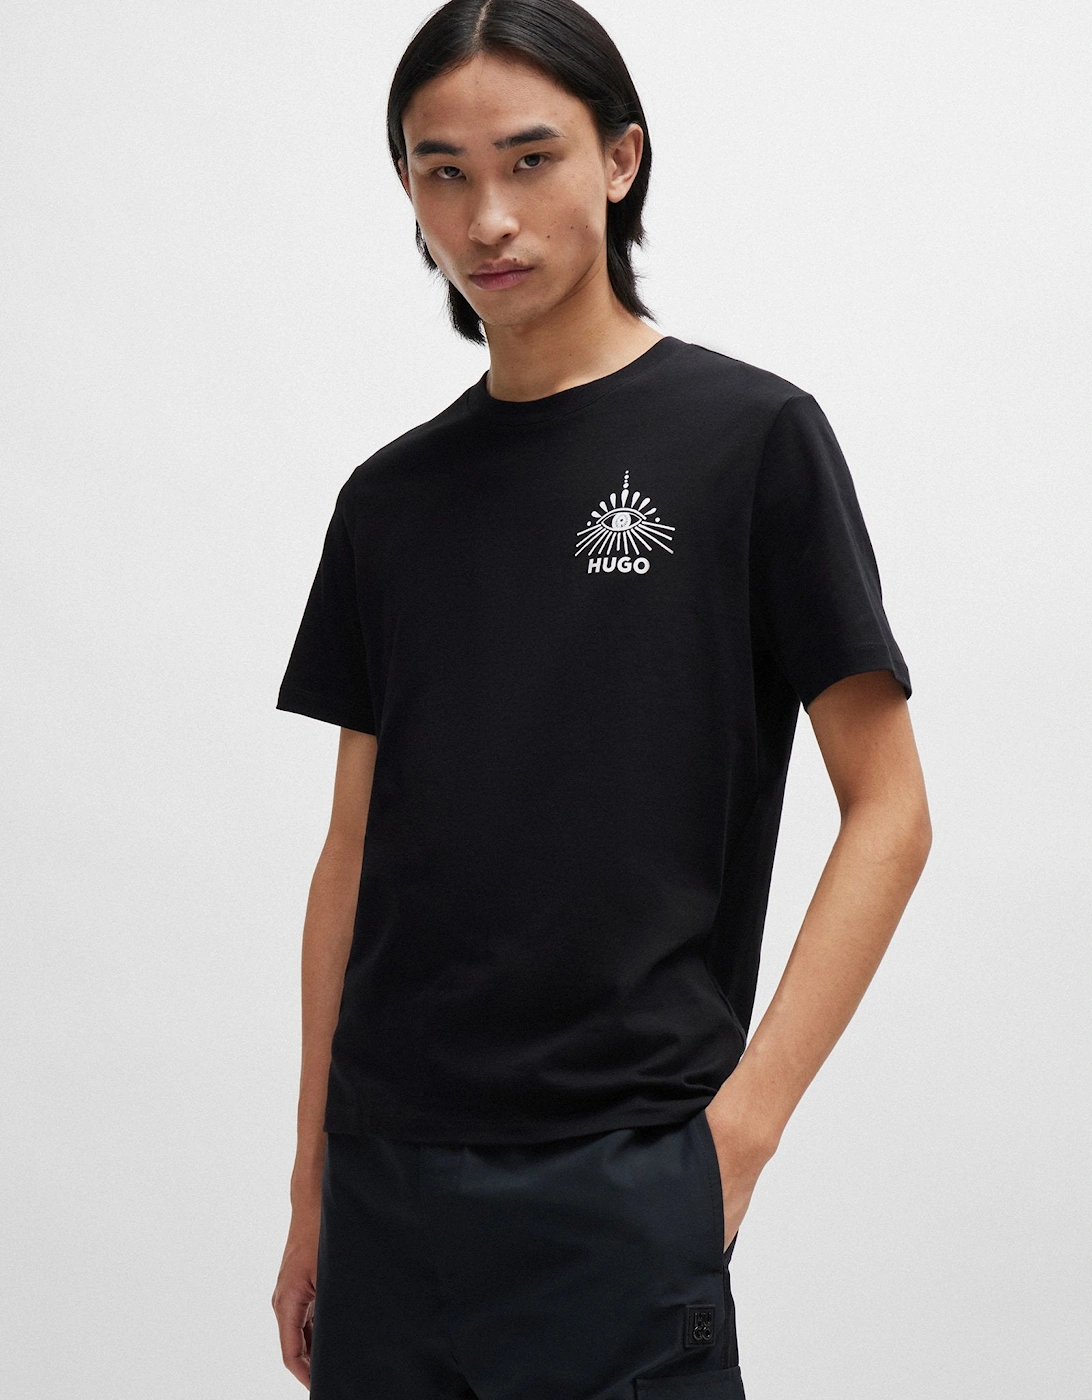 Dedico T-Shirt 001 Black